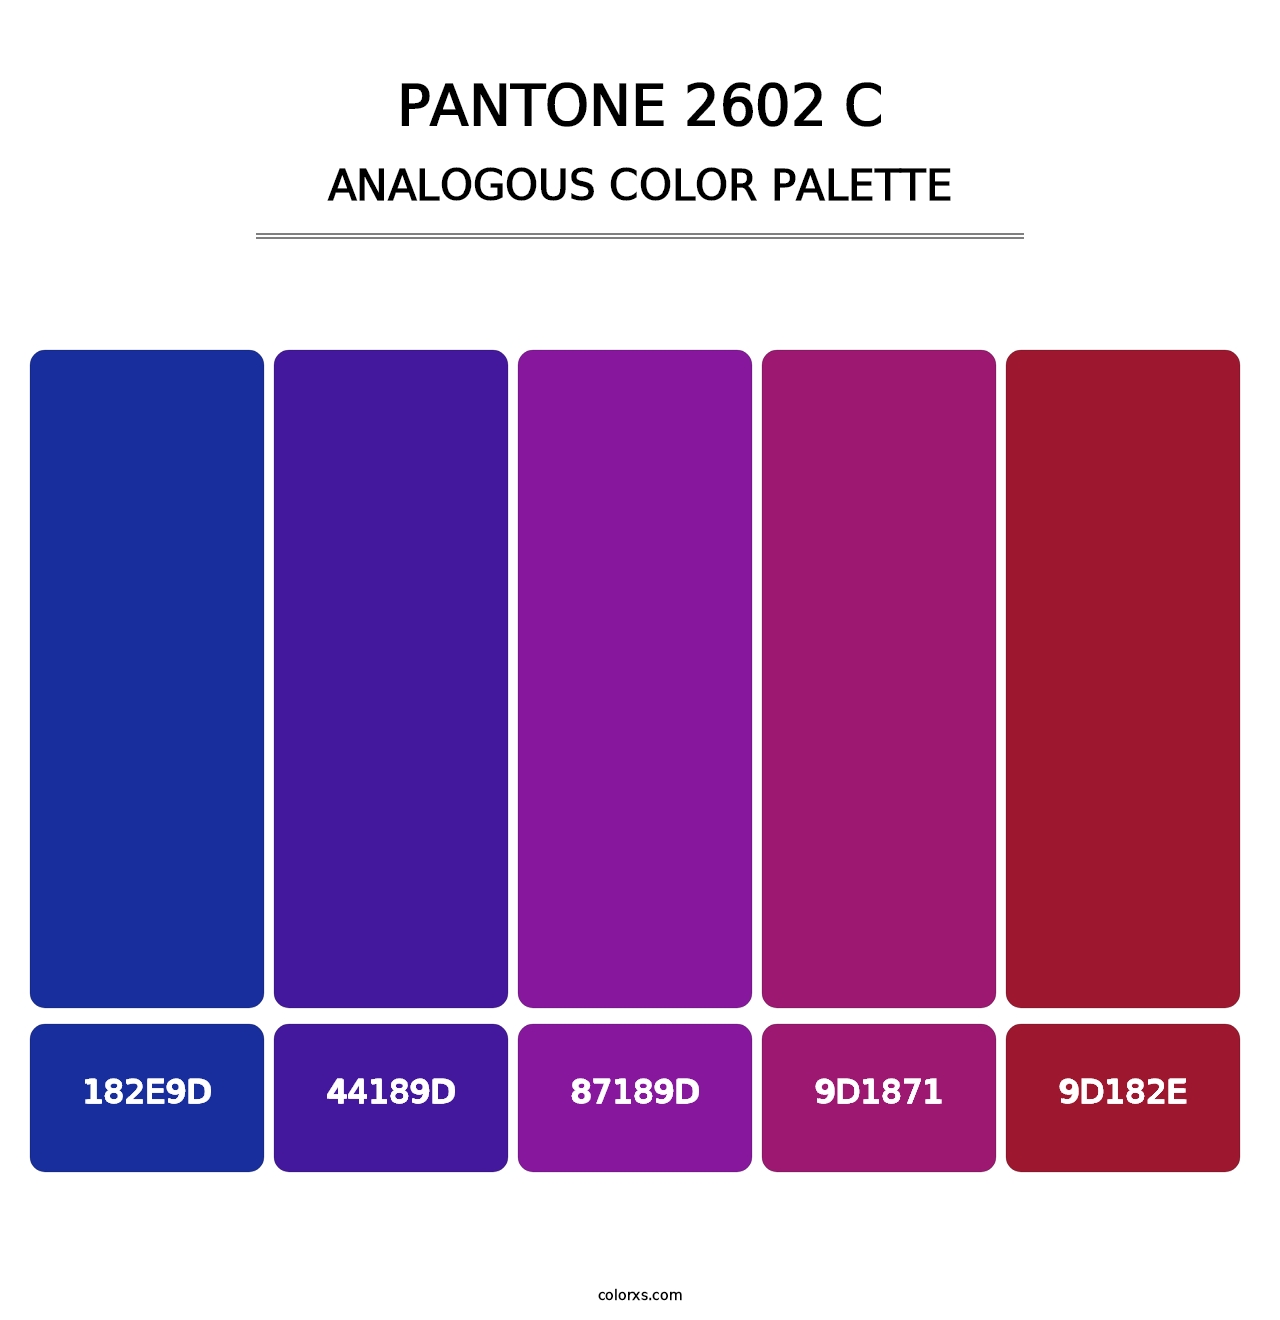 PANTONE 2602 C - Analogous Color Palette